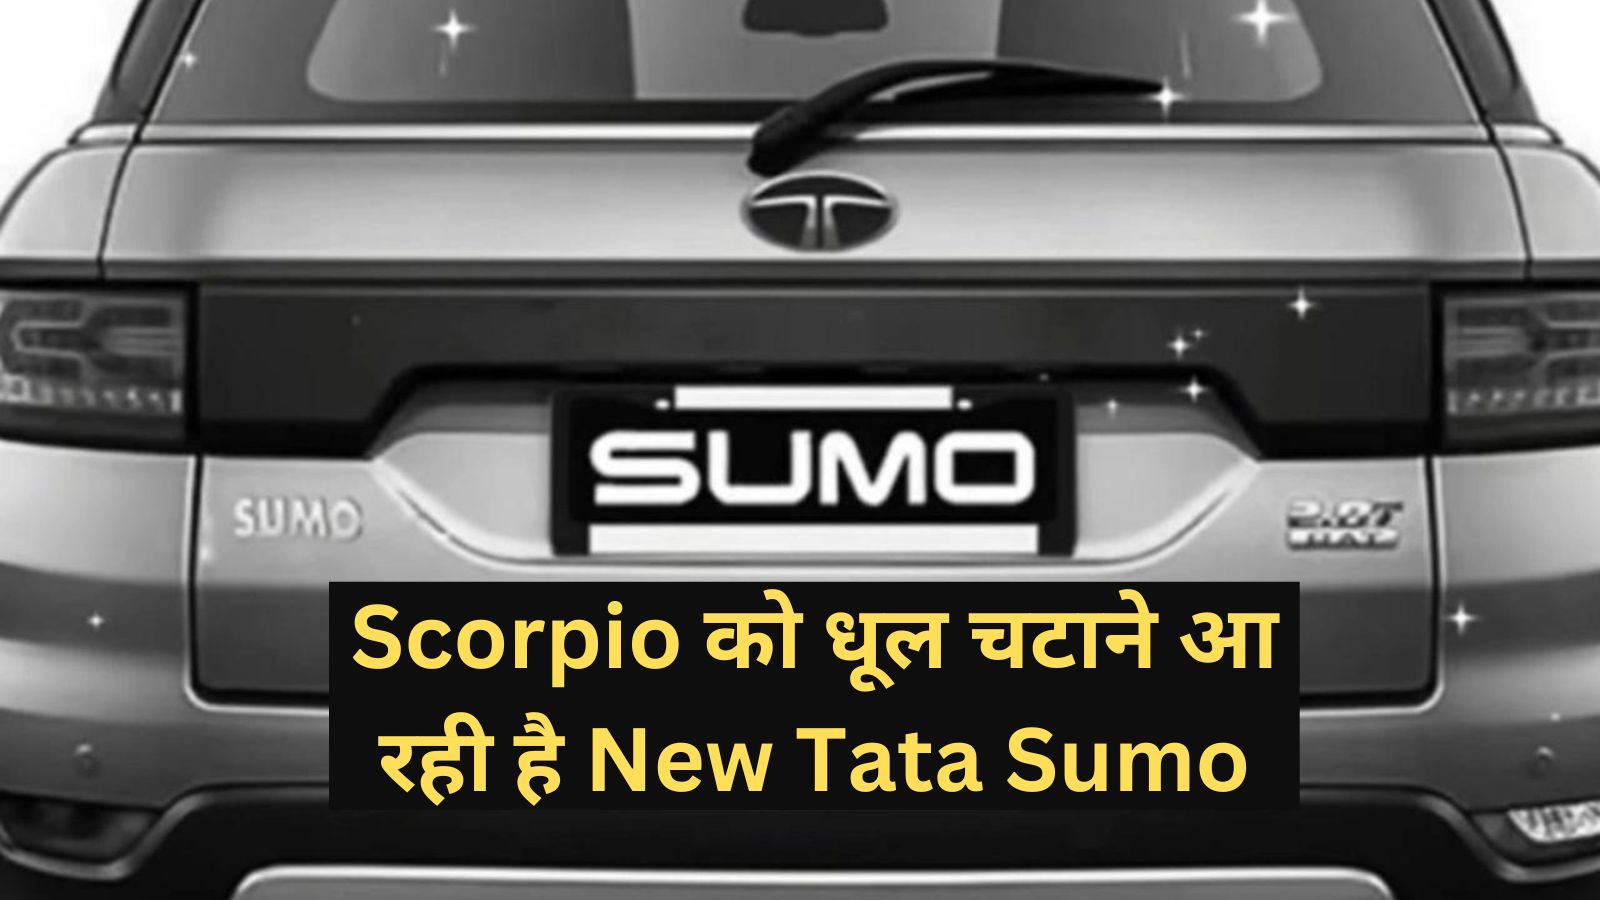 Tata Sumo: Scorpio को धूल चटाने आ रही है New Tata Sumo, मिलेगा पावरफुल इंजन और आधुनिक फीचर्स, कीमत इतनी कम